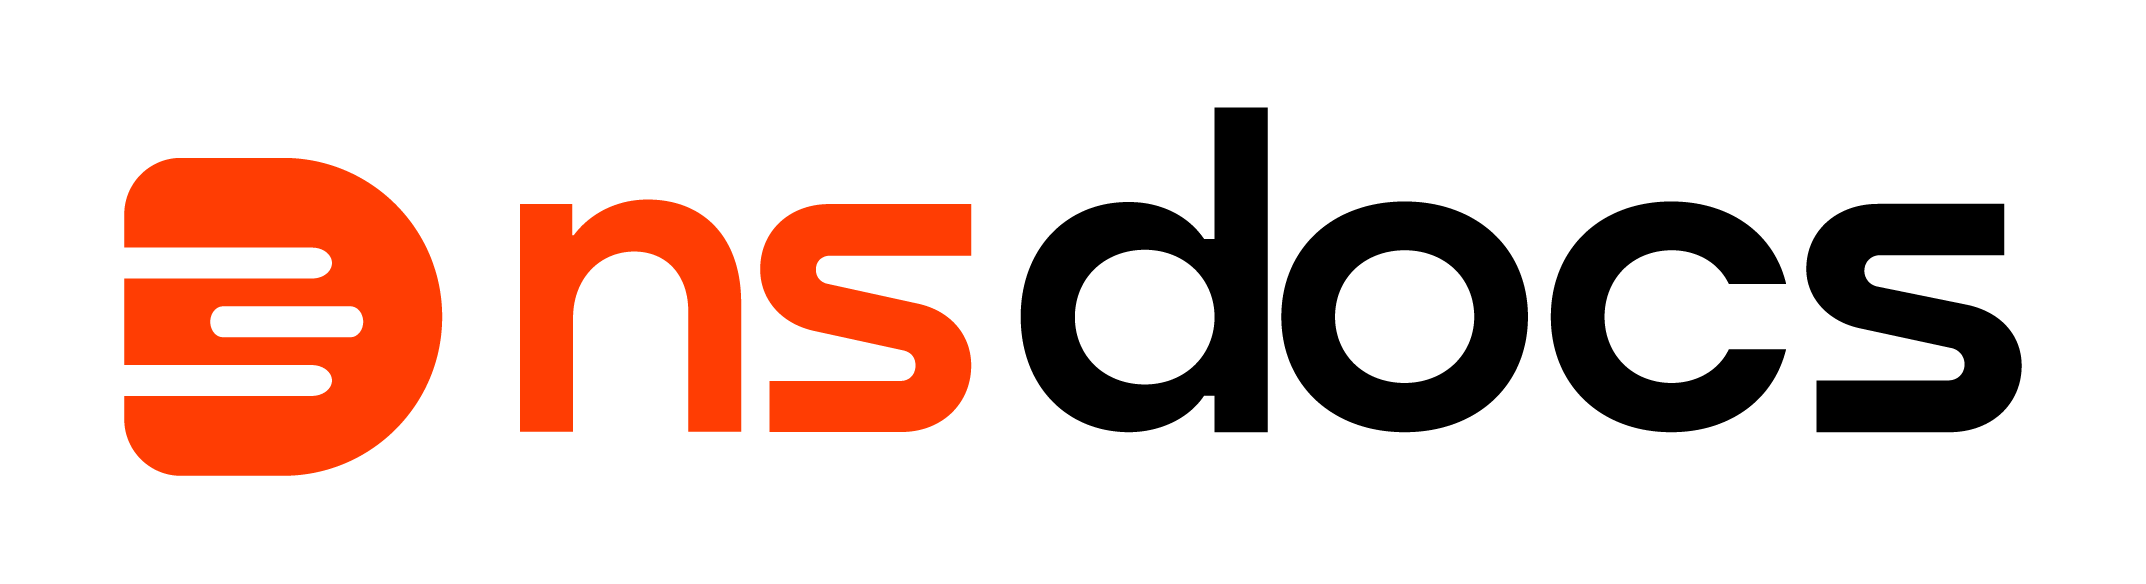 Logo nsdocs